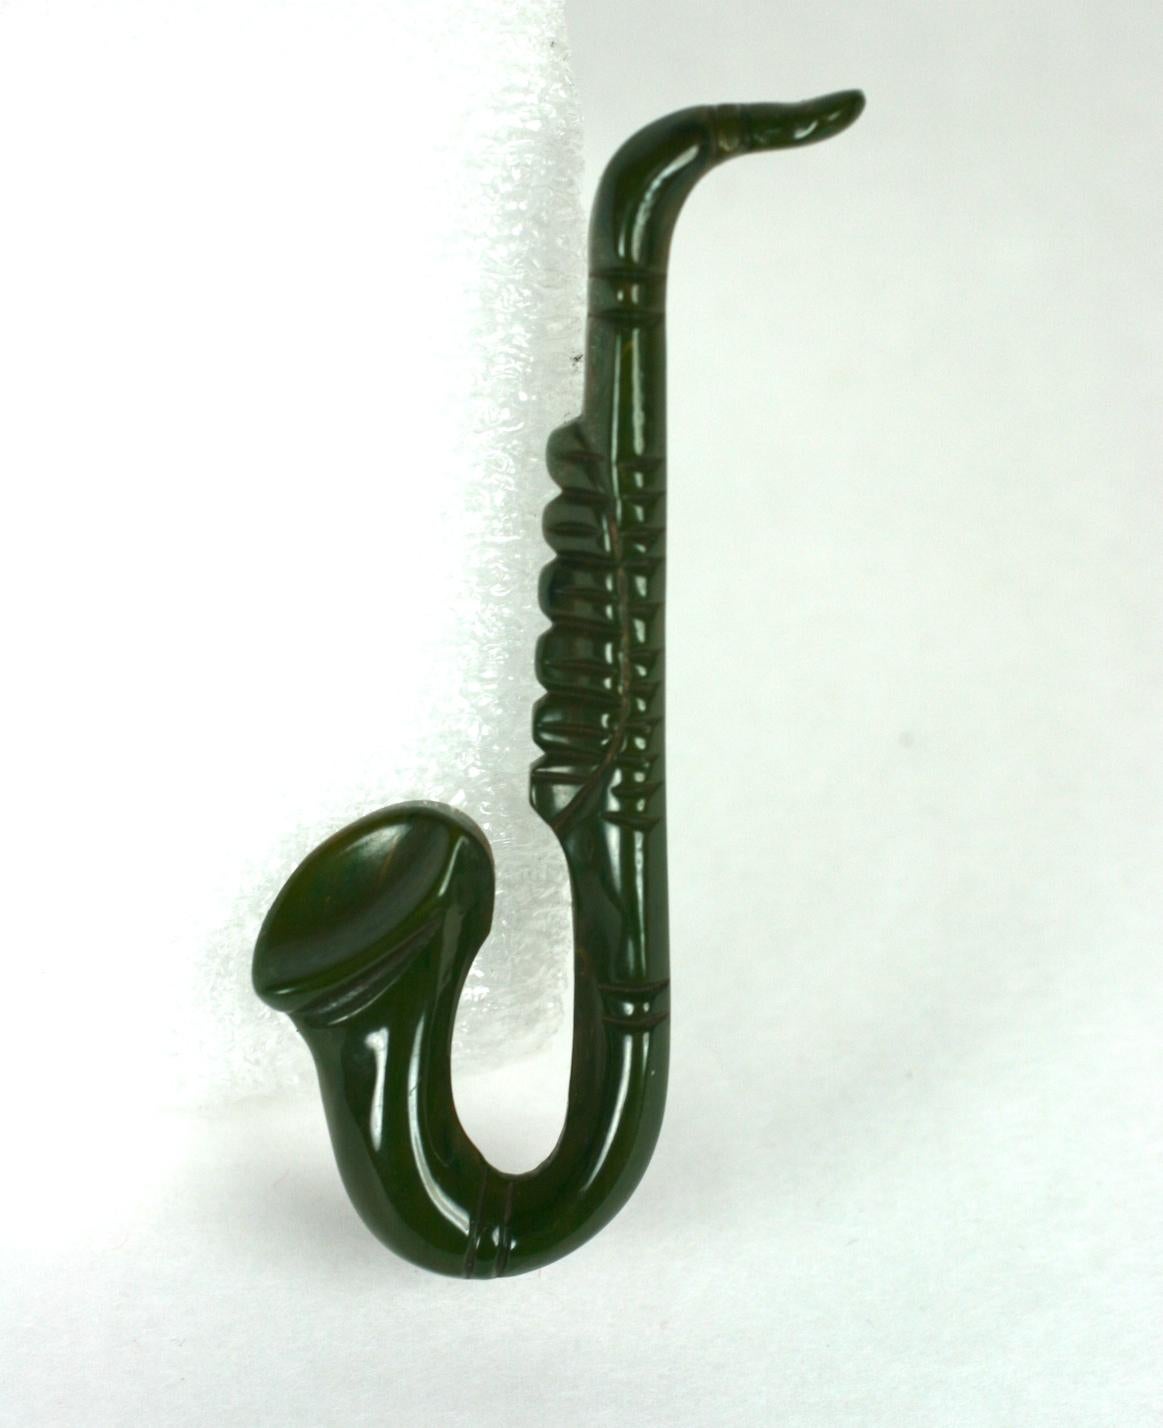 Rare Broche Saxophone Art Déco en bakélite sculptée. Sculpté à la main en bakélite marbrée verte de fin de journée avec un motif musical inhabituel.  De l'âge du jazz des années 30, aux États-Unis.
3.25